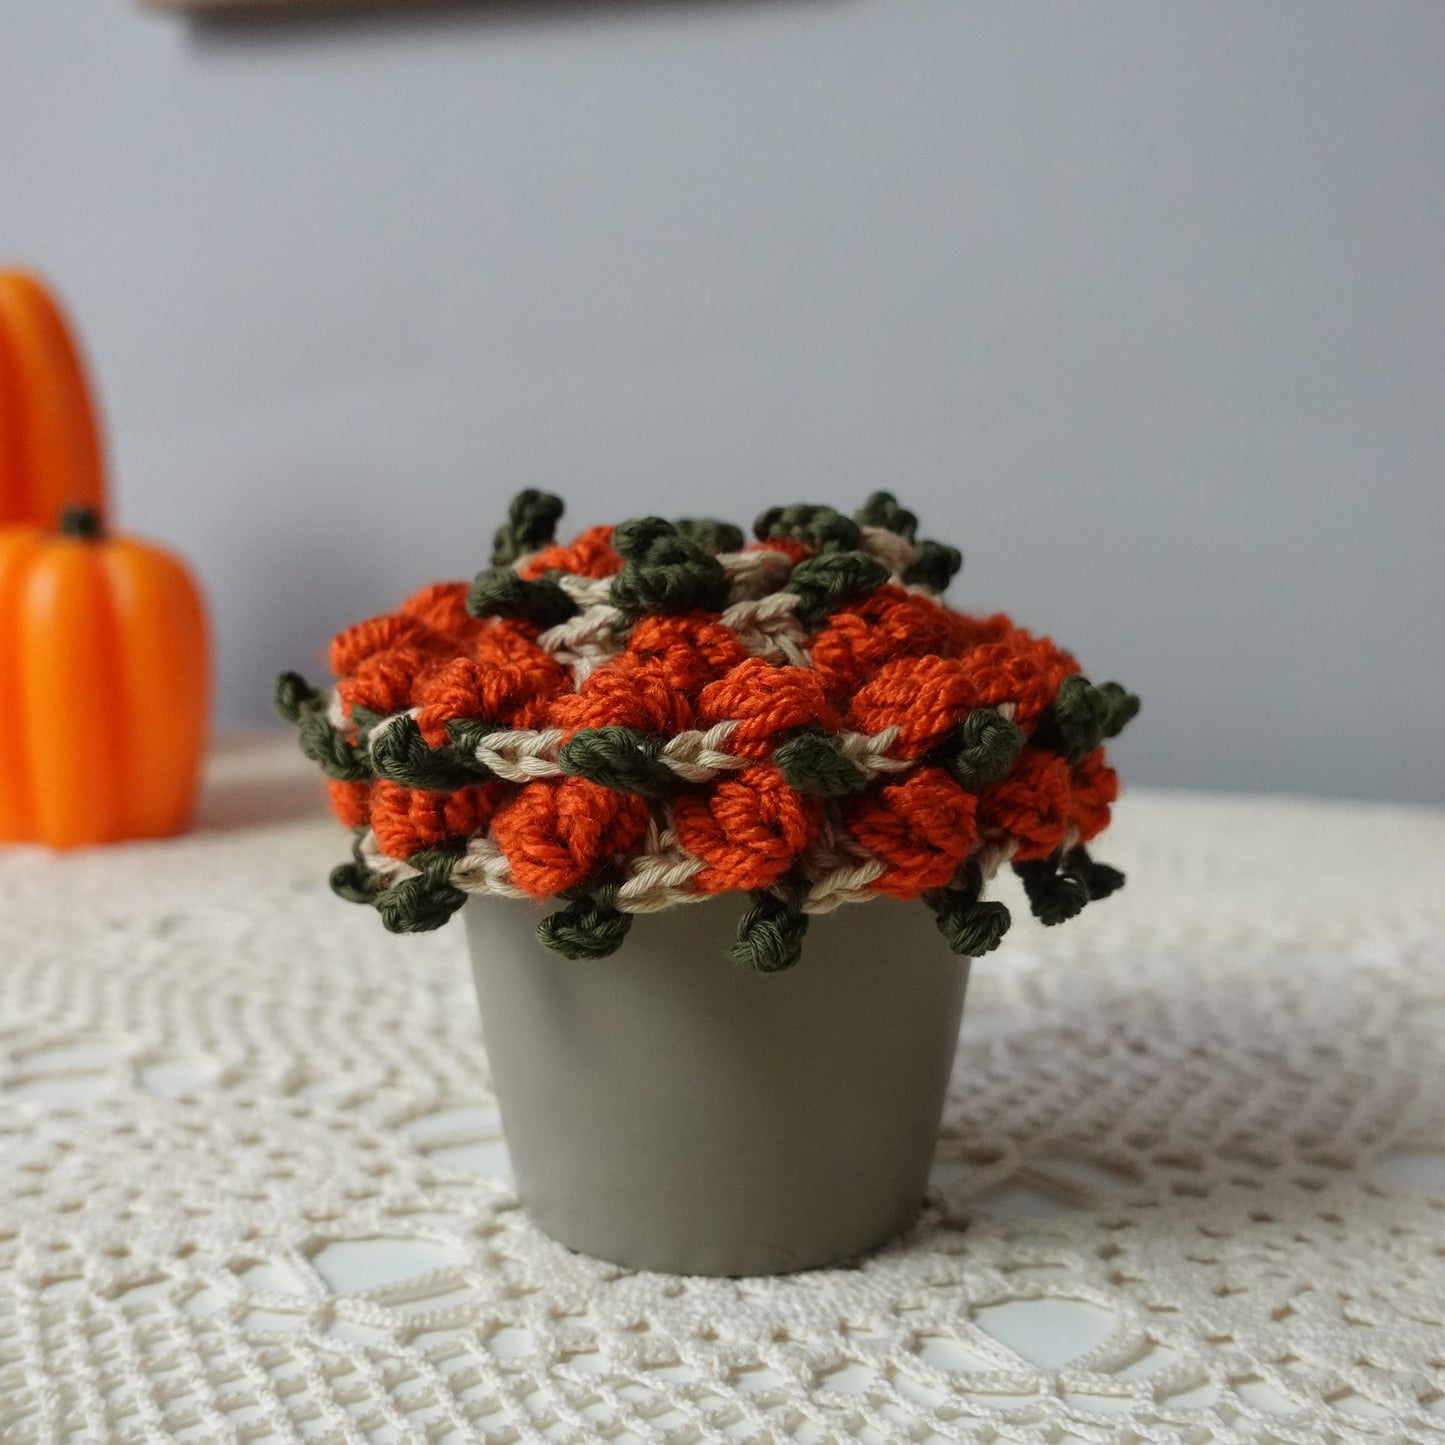 Crochet Pumpkin Coaster and Plant Pot Written Pattern, crochet plant pot coaster pattern, crochet pumpkin, Brunaticality